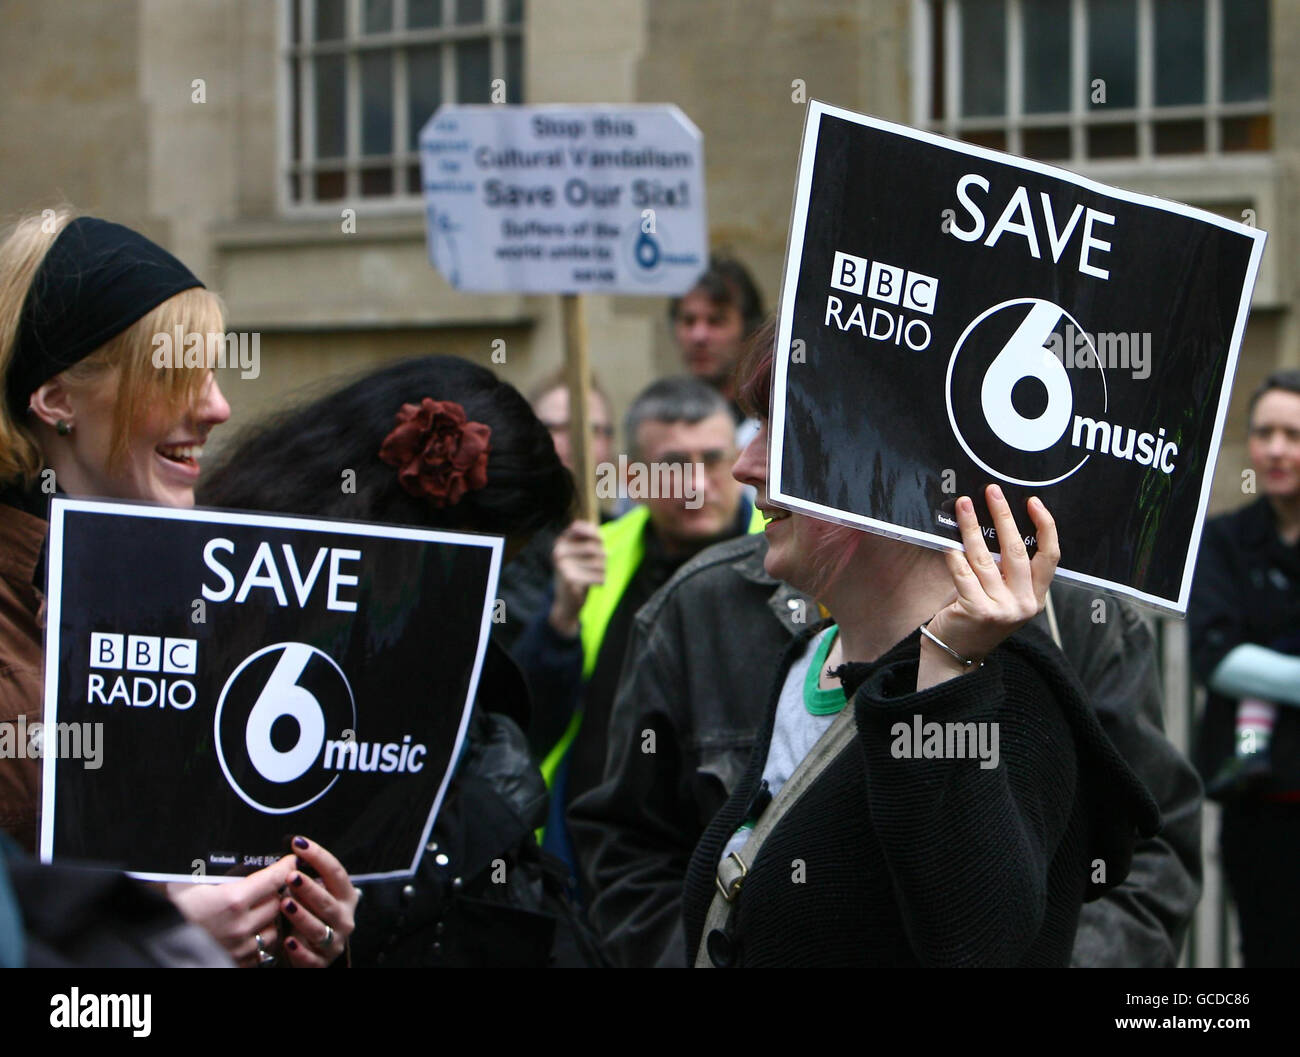 Los fans de la emisora de radio BBC 6 Music protestan contra su posible  cierre durante la protesta Save 6 Music en las afueras de BBC Broadcasting  House, Londres Fotografía de stock - Alamy